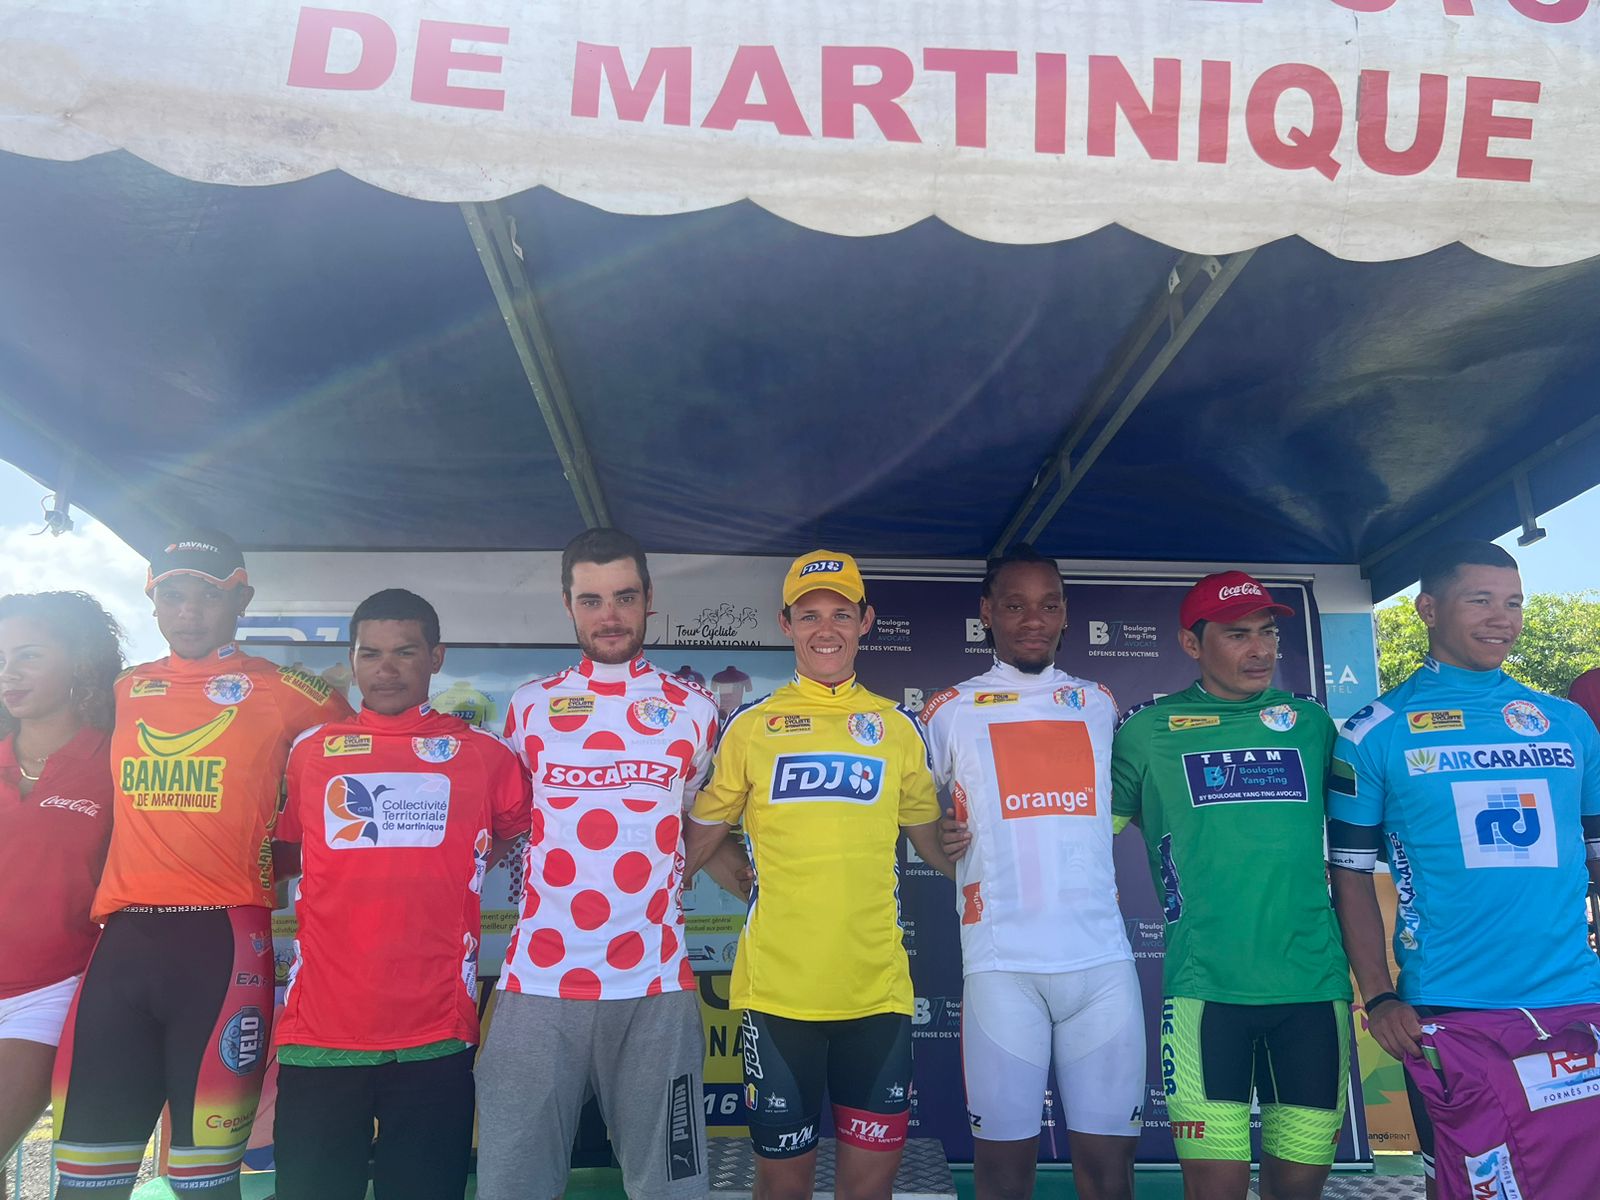     Tour cycliste de Martinique : classements et maillots après la 6ème étape 

